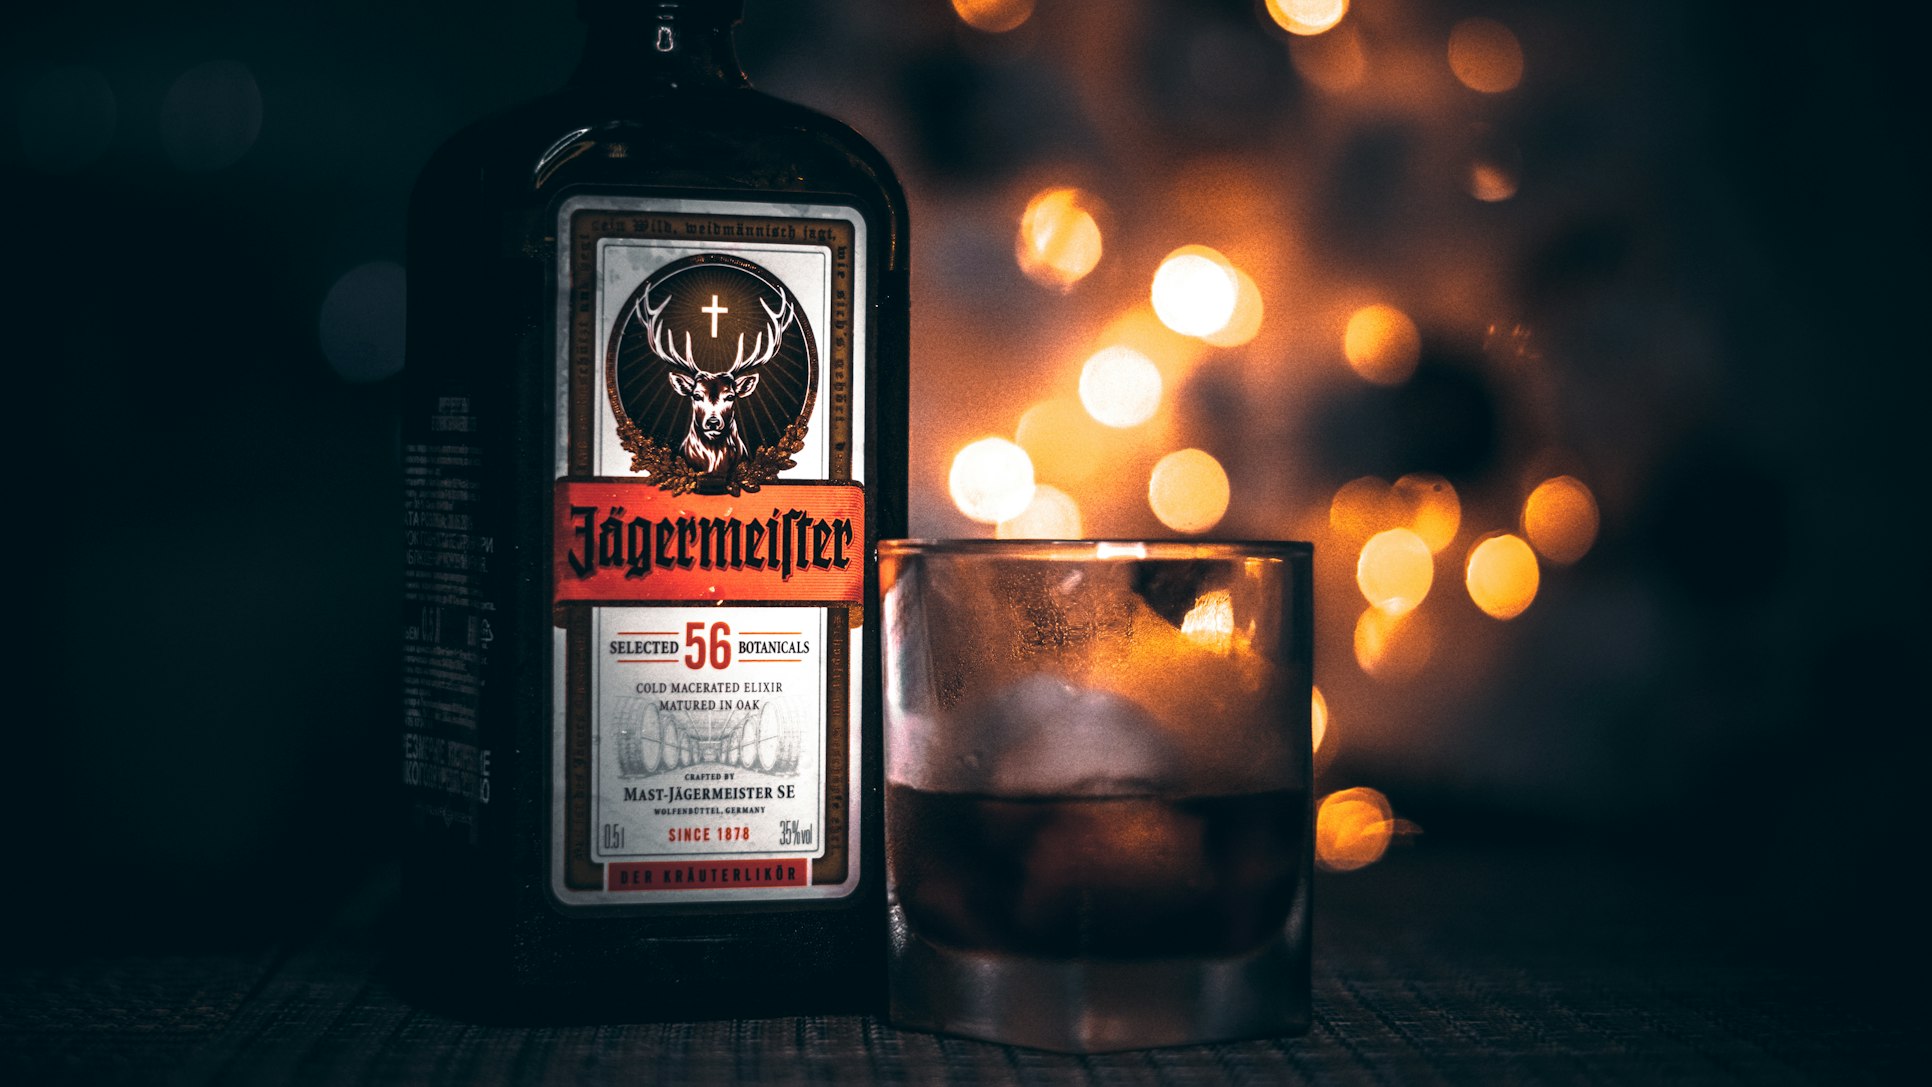 Μισό μπουκάλι Jägermeister: Ετυμηγορία κατά μεθυσμένου πιλότου